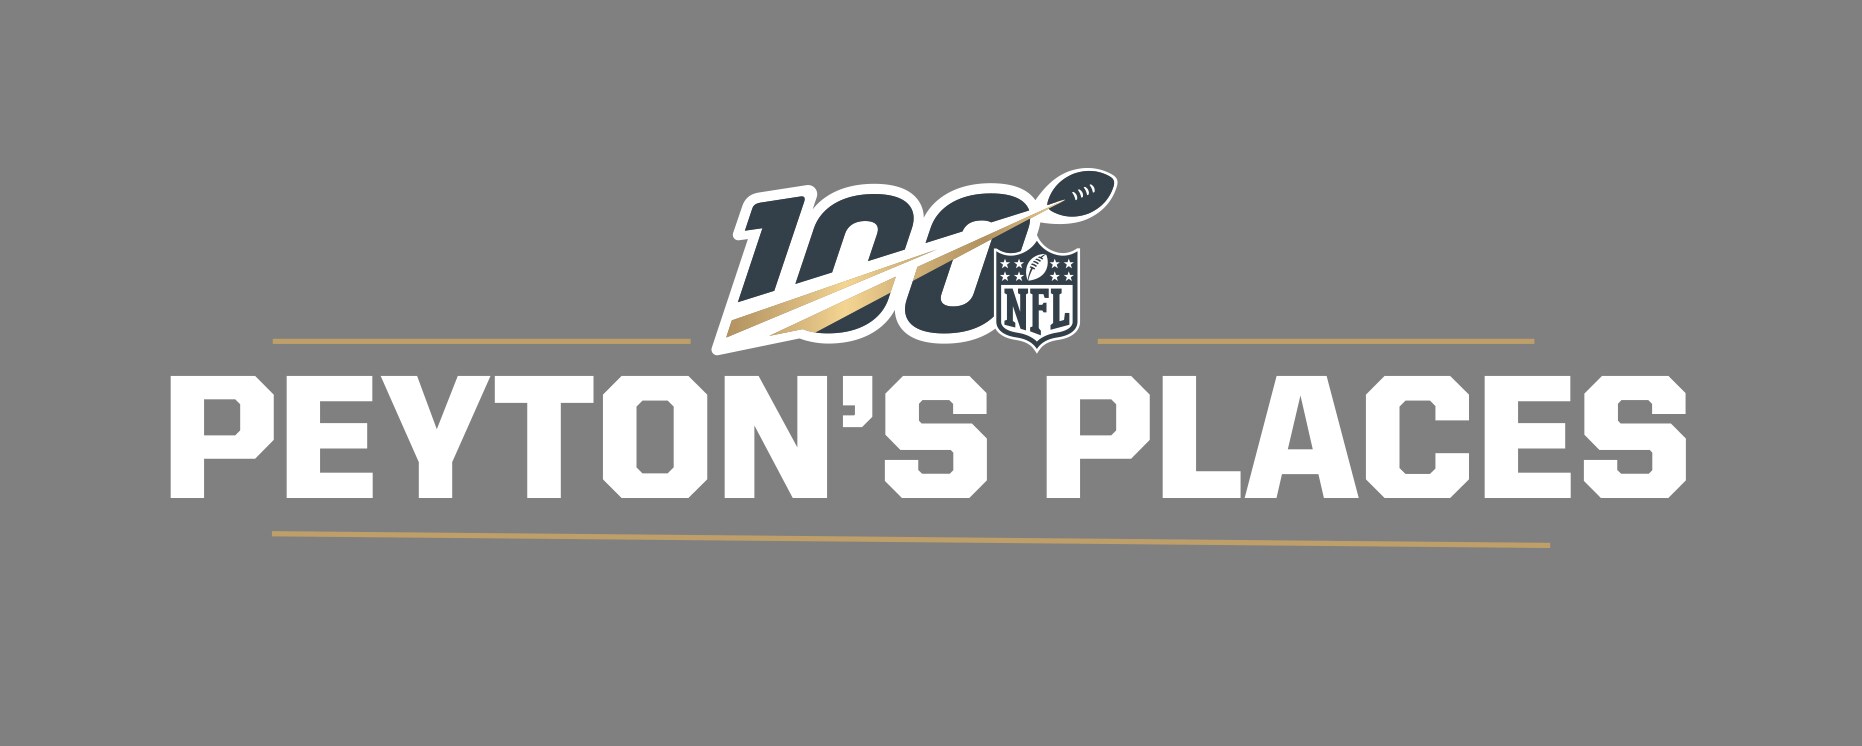 Peyton Manning to Host New ESPN+ Original Series Peyton’s Places